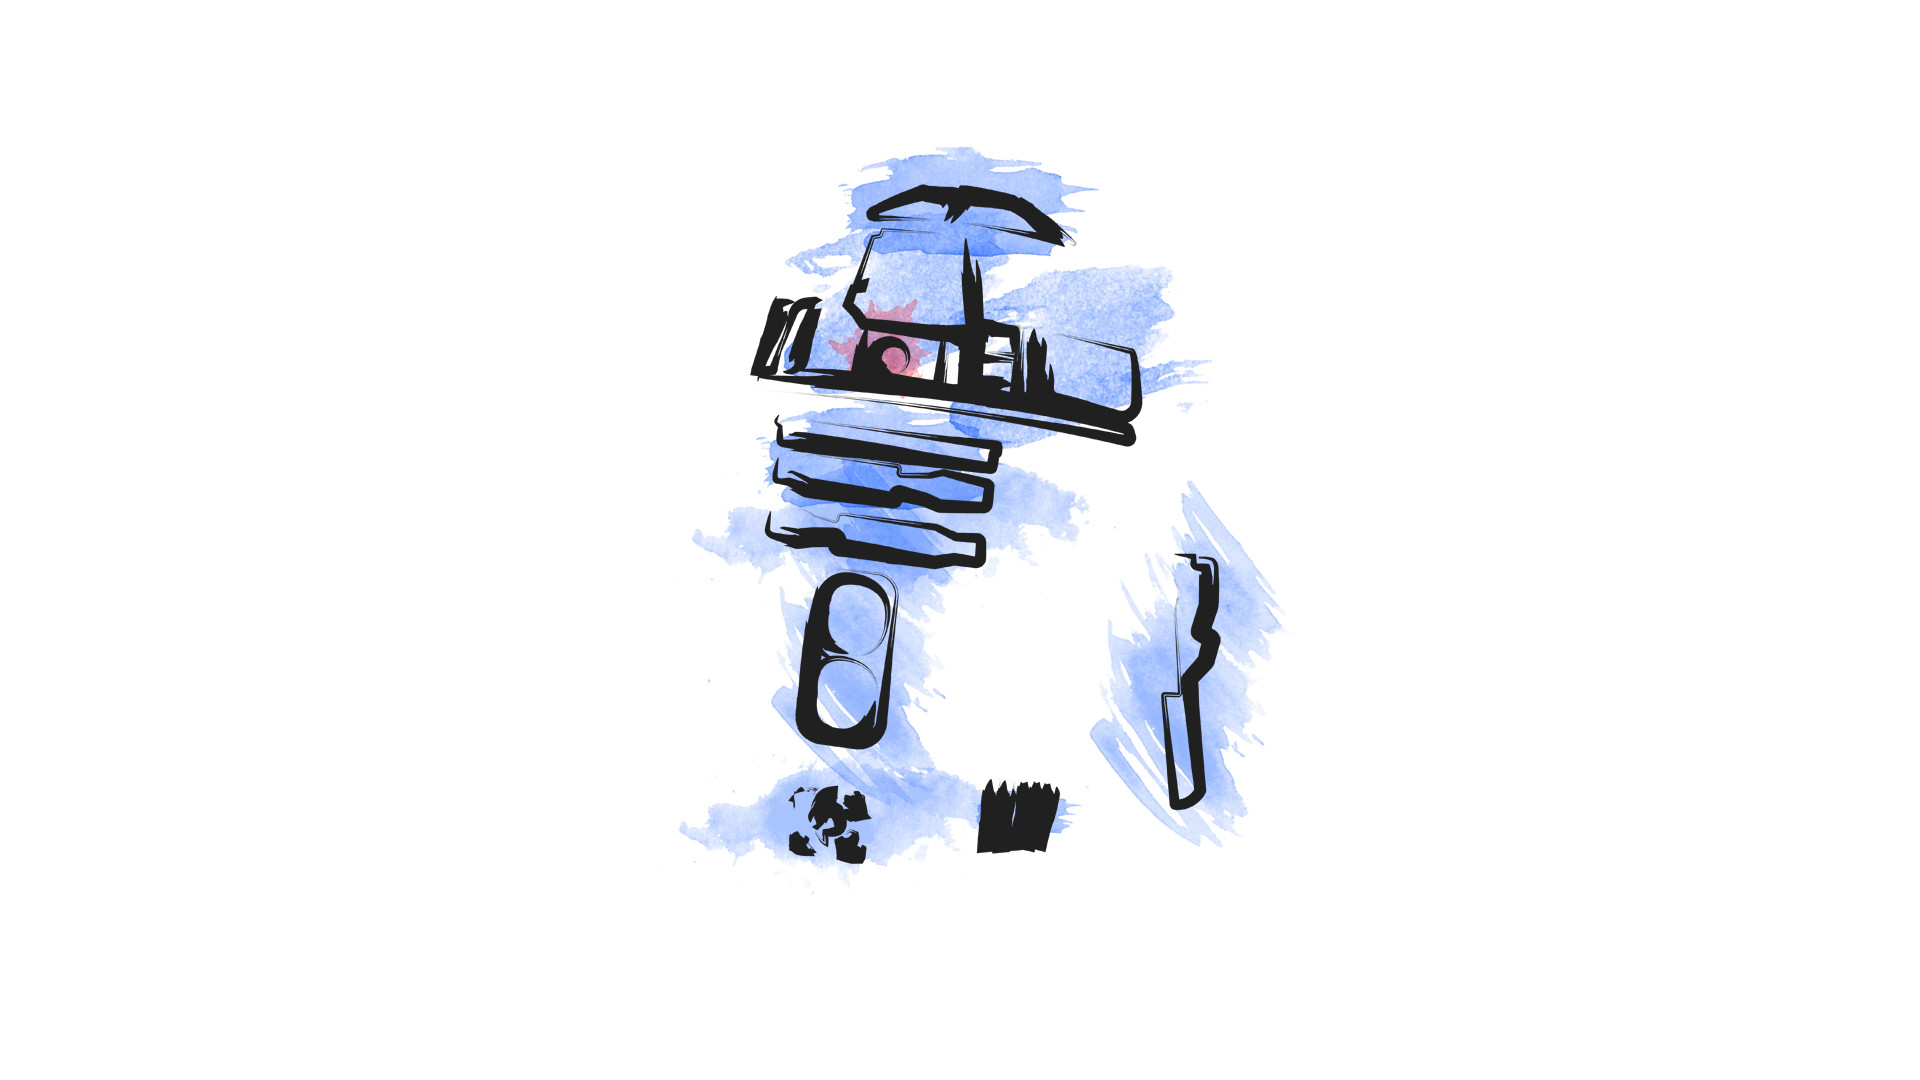 1920x1080 Sci Fi - Star Wars R2-D2 Wallpaper